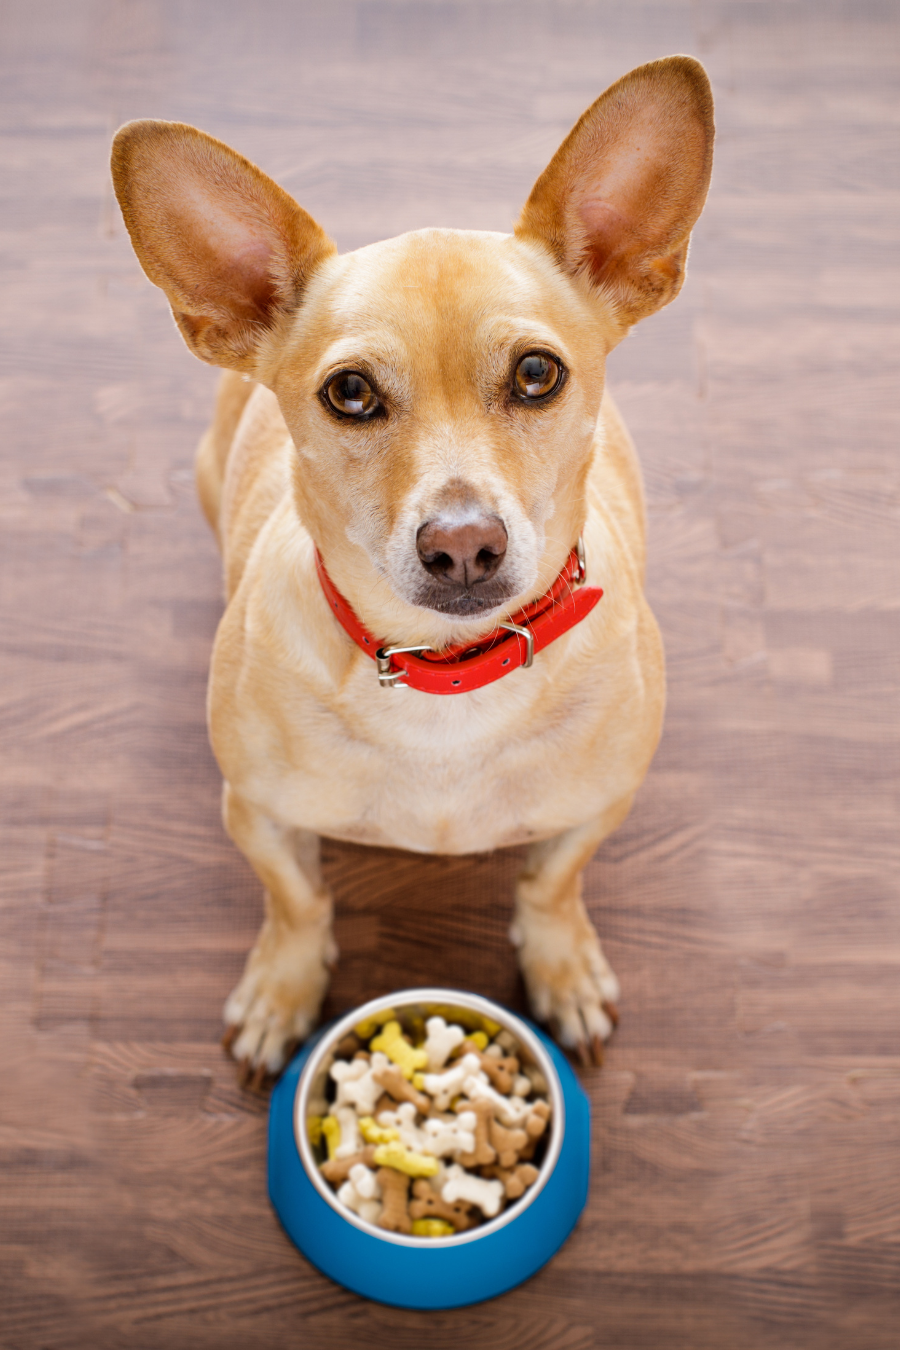 dog with dog food bowl